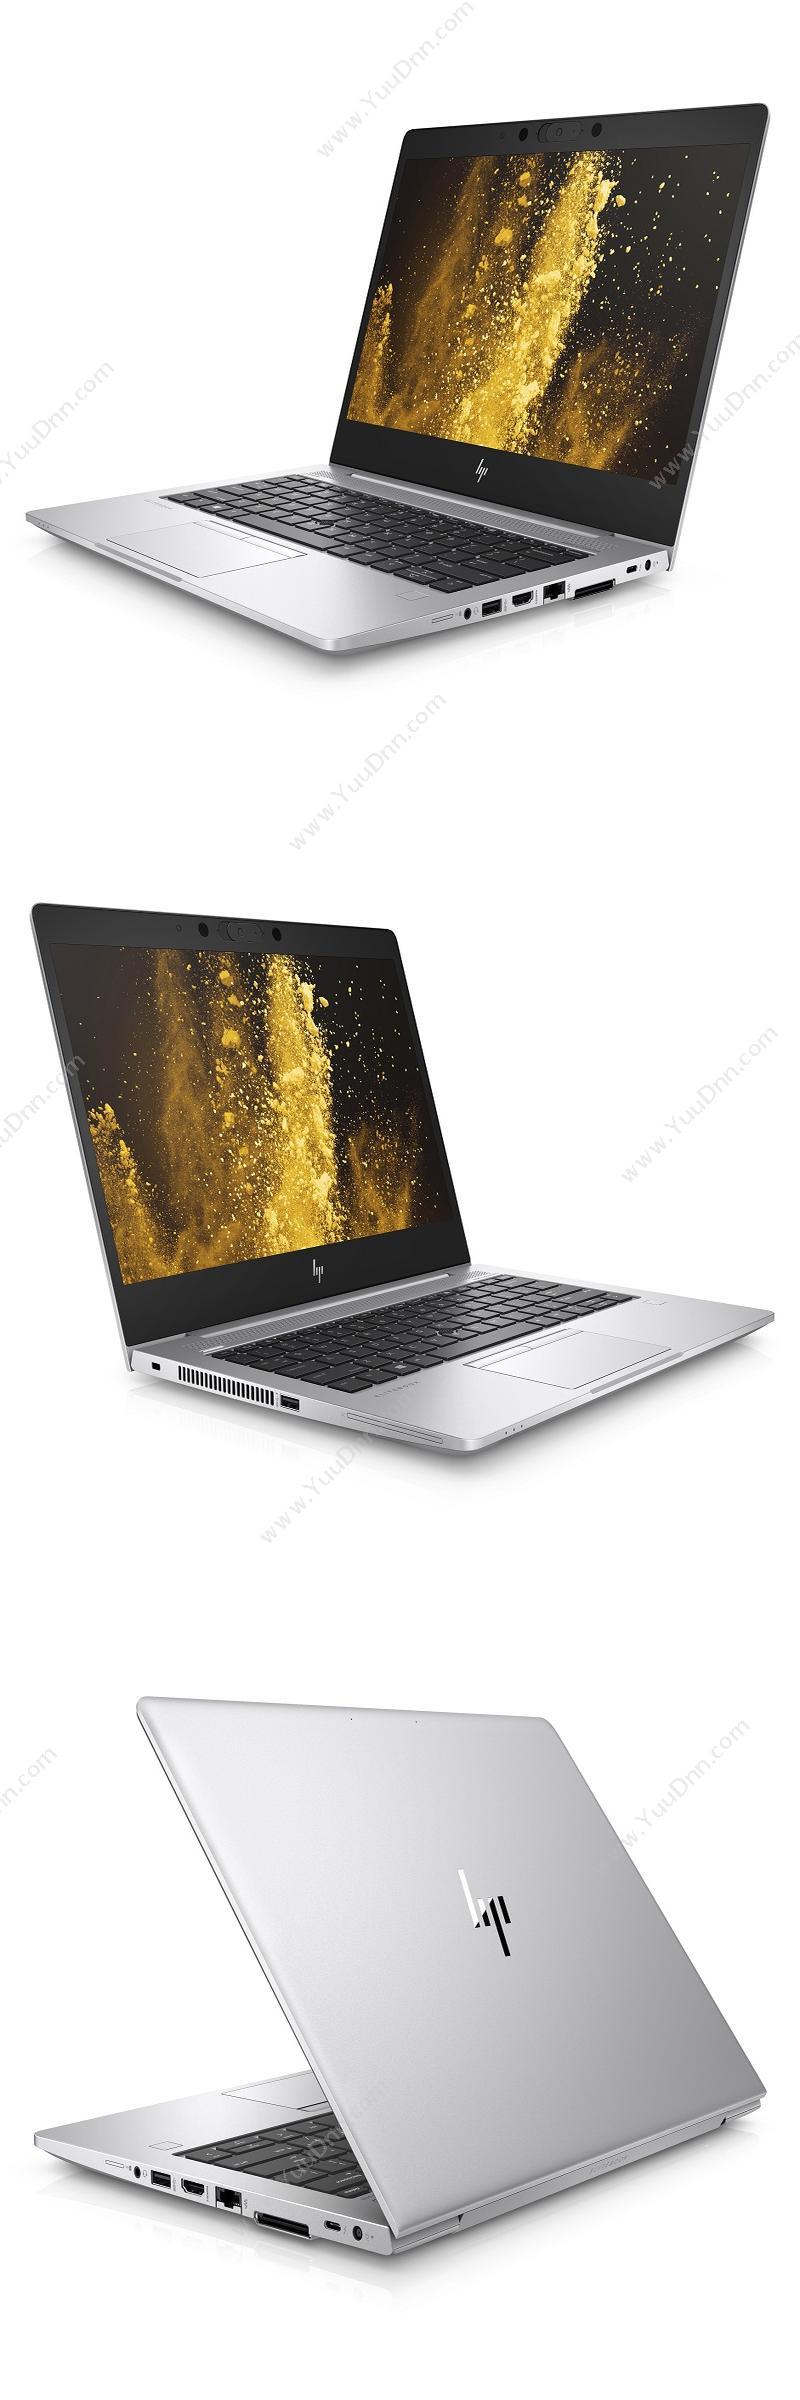 惠普 HP HP EliteBook 830 G6-2202500005A 笔记本